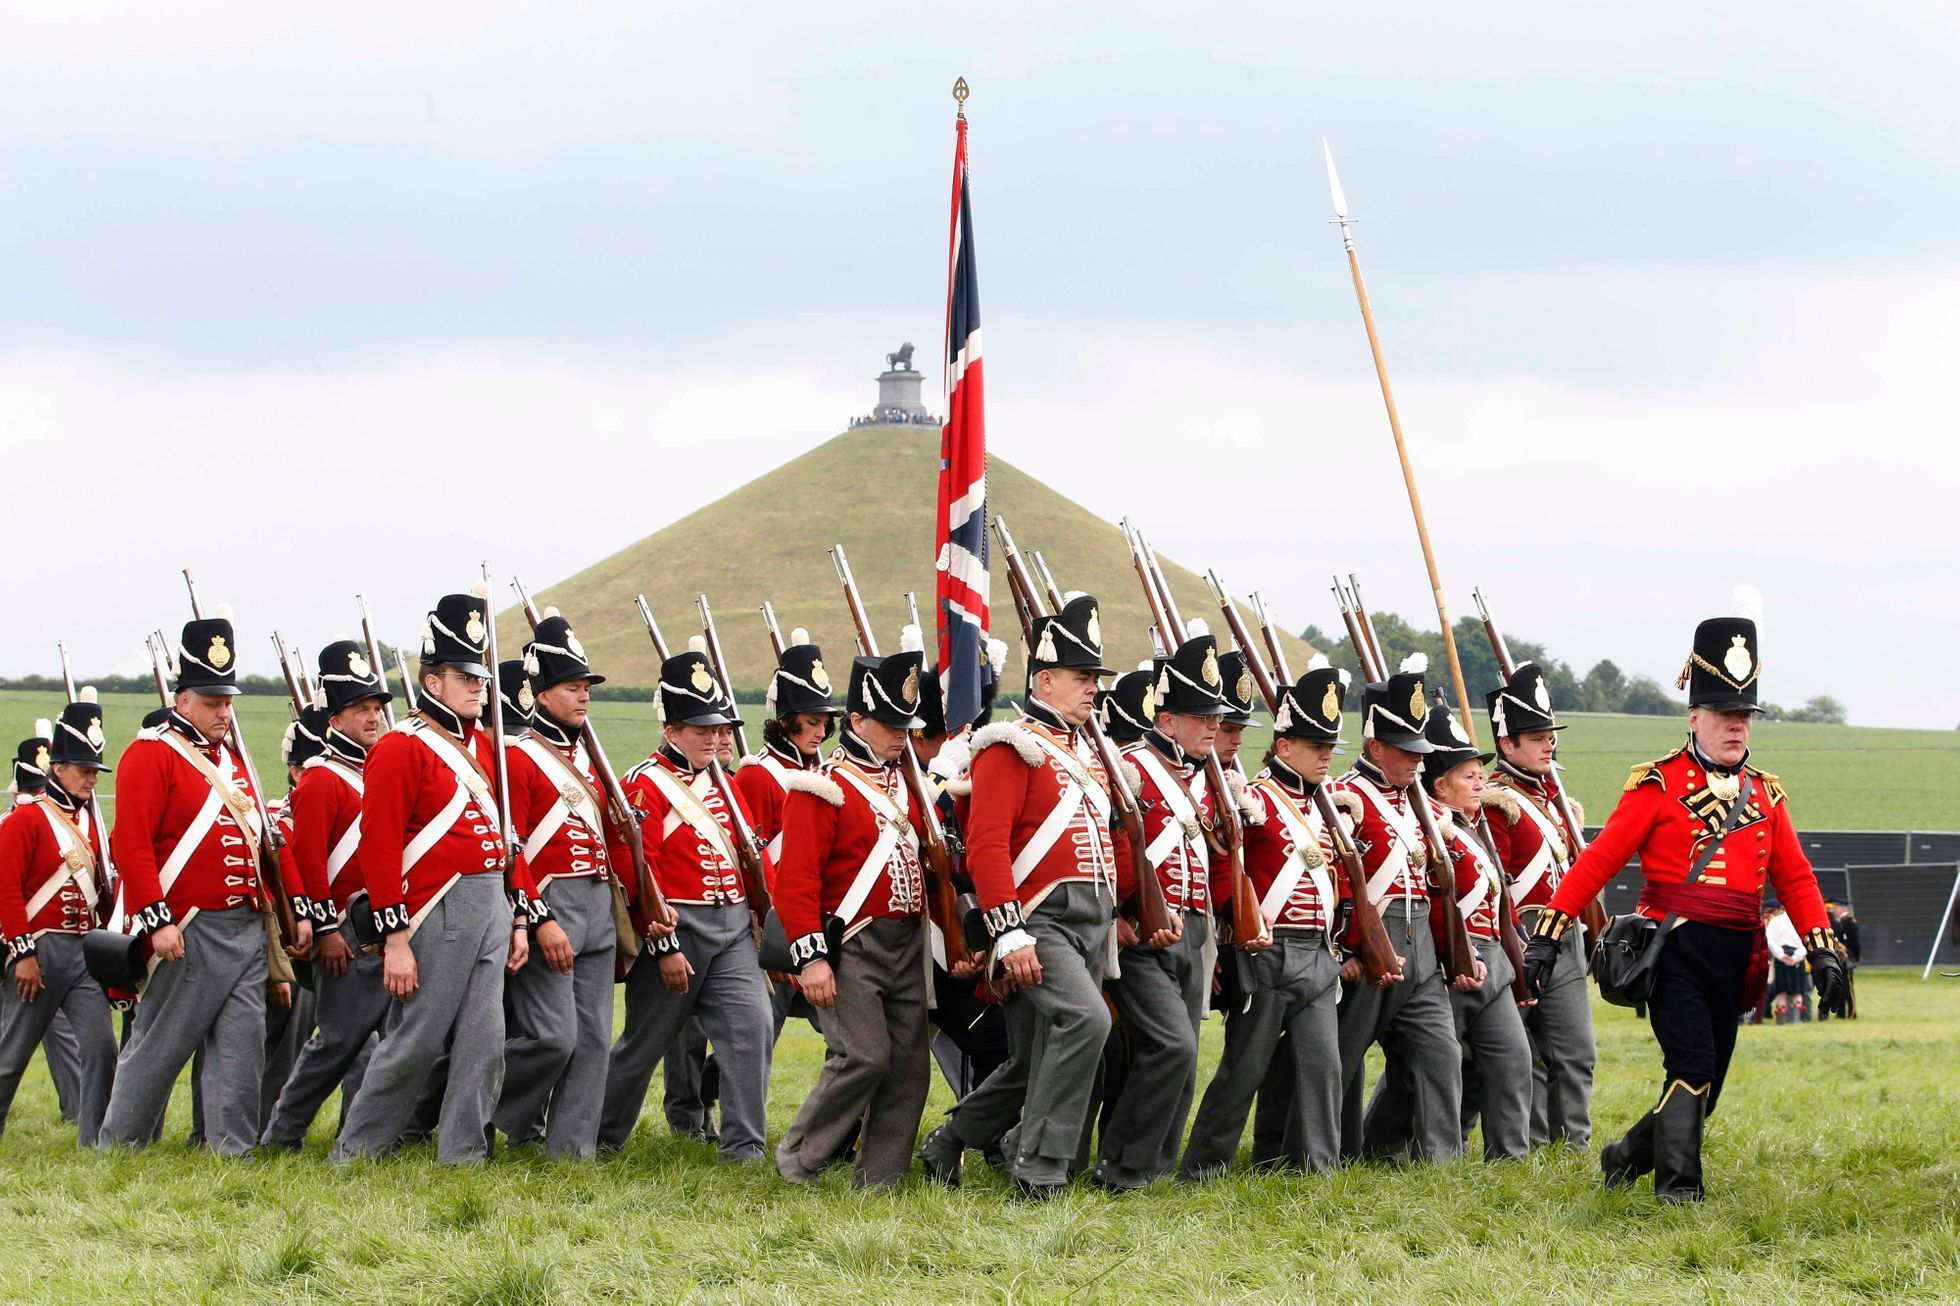 Bitva u Waterloo u 200. výročí porážky Napoleona